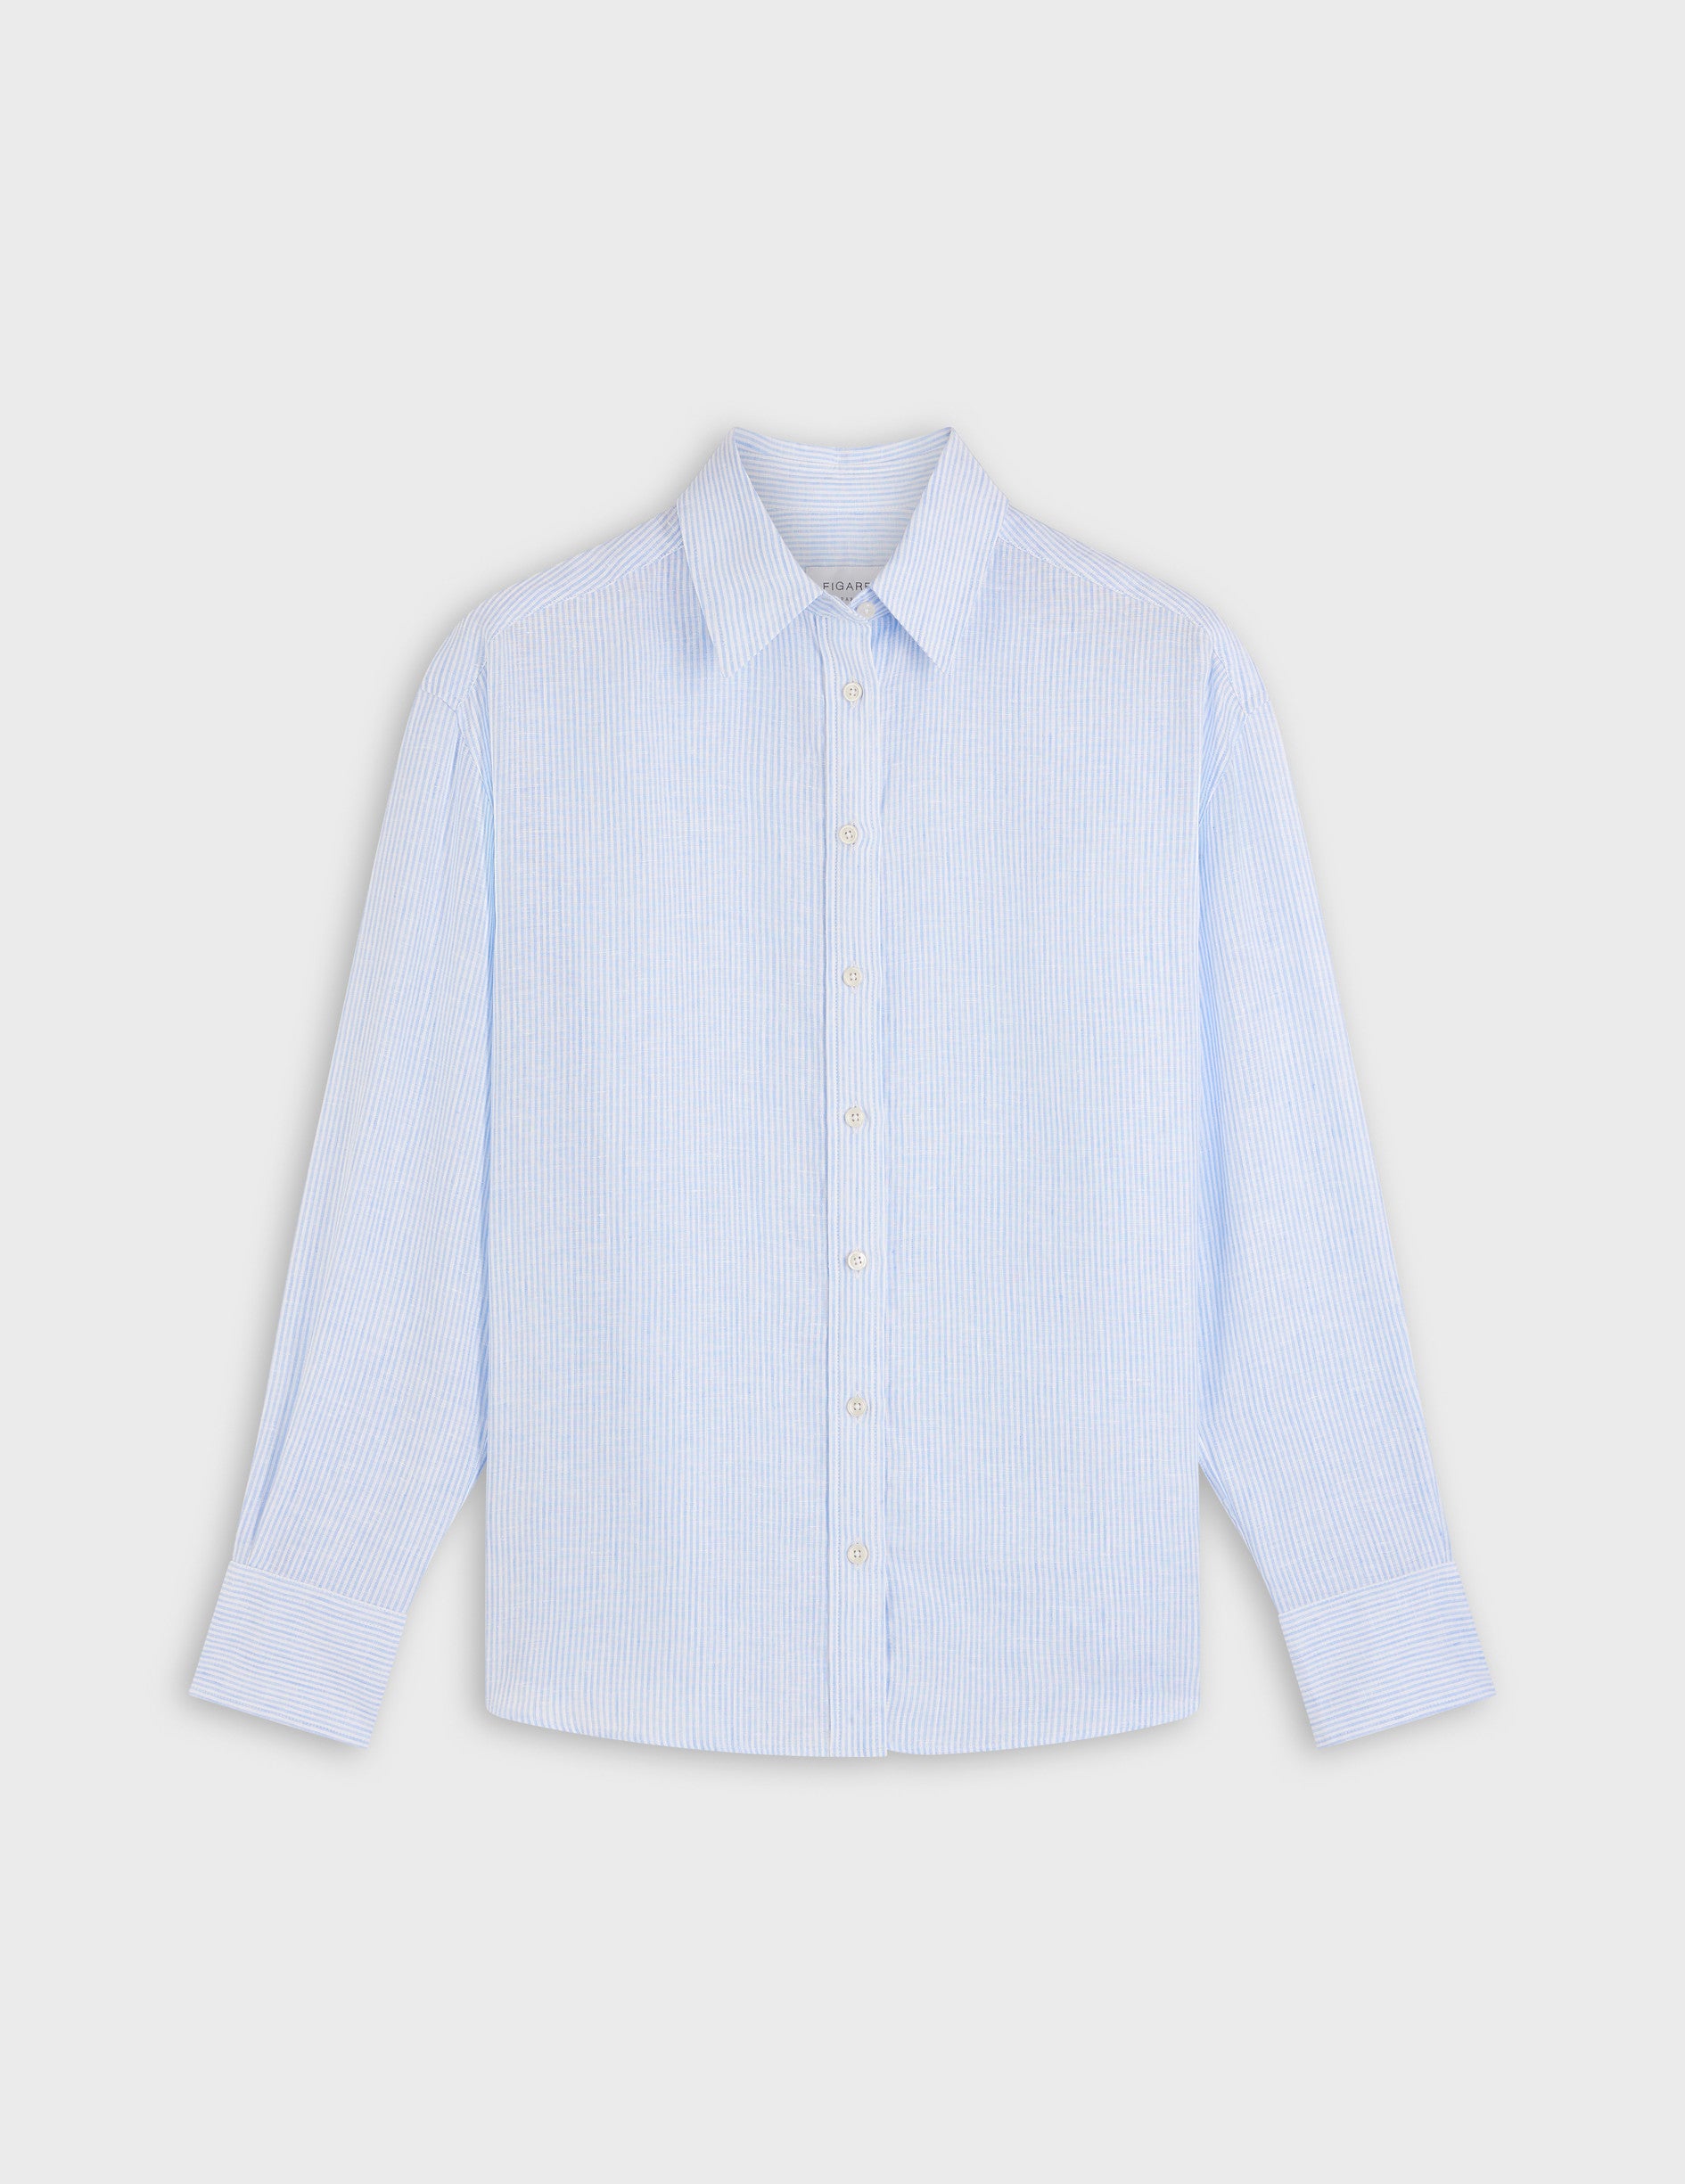 Ambre shirt in light blue striped linen - Linen - Shirt Collar